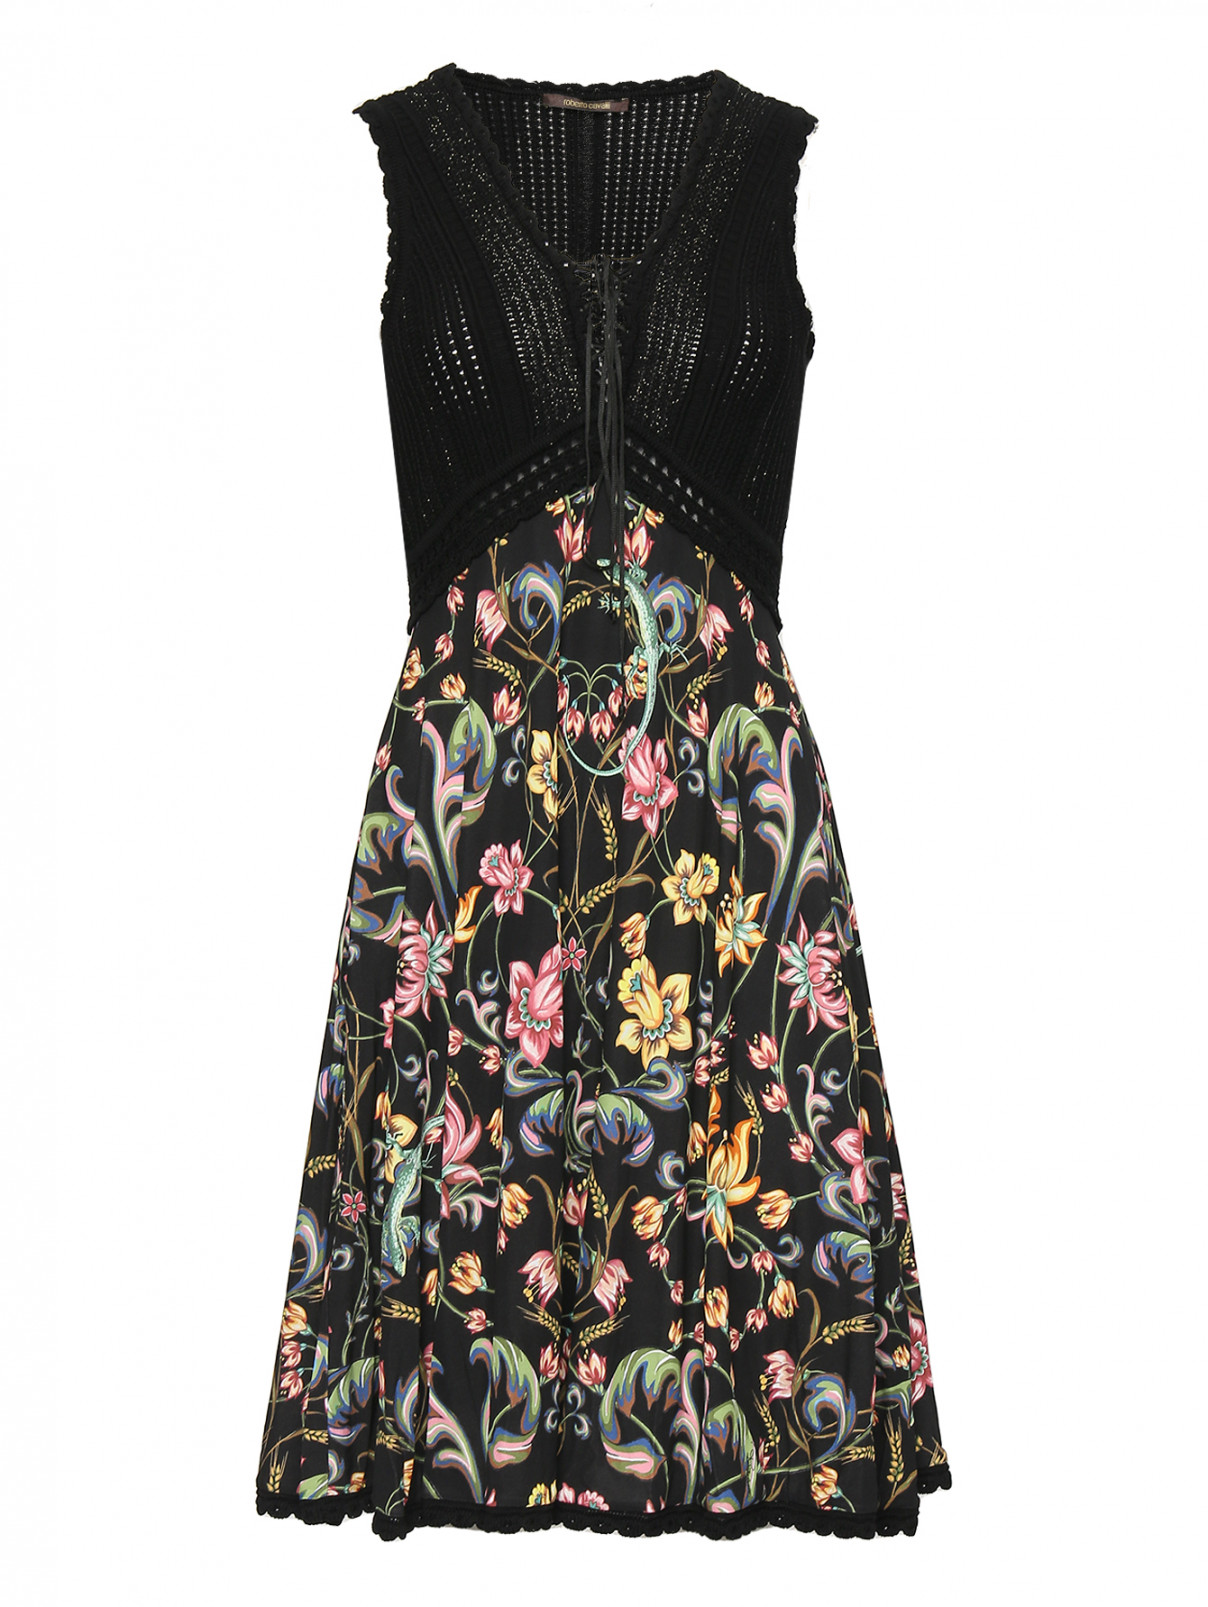 Комбинированное платье с узором Roberto Cavalli  –  Общий вид  – Цвет:  Черный